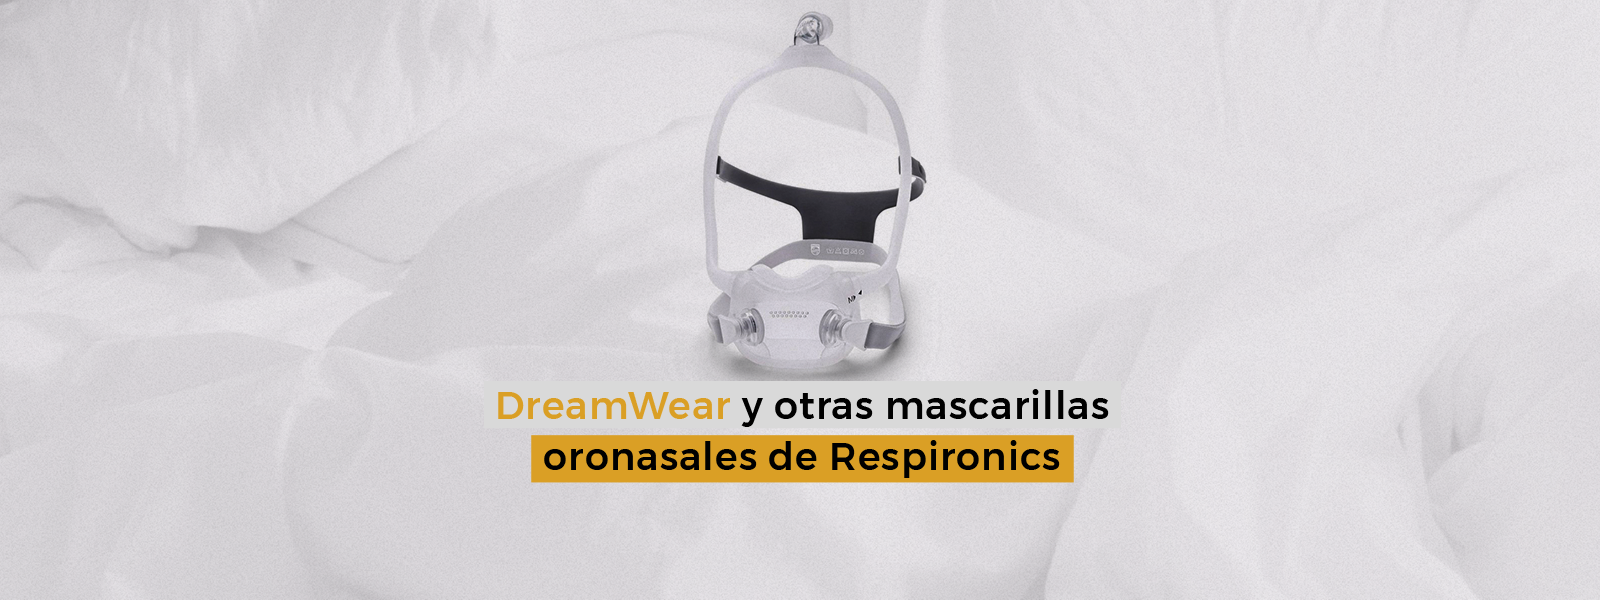 DreamWear y otras mascarillas oronasales de Respironics